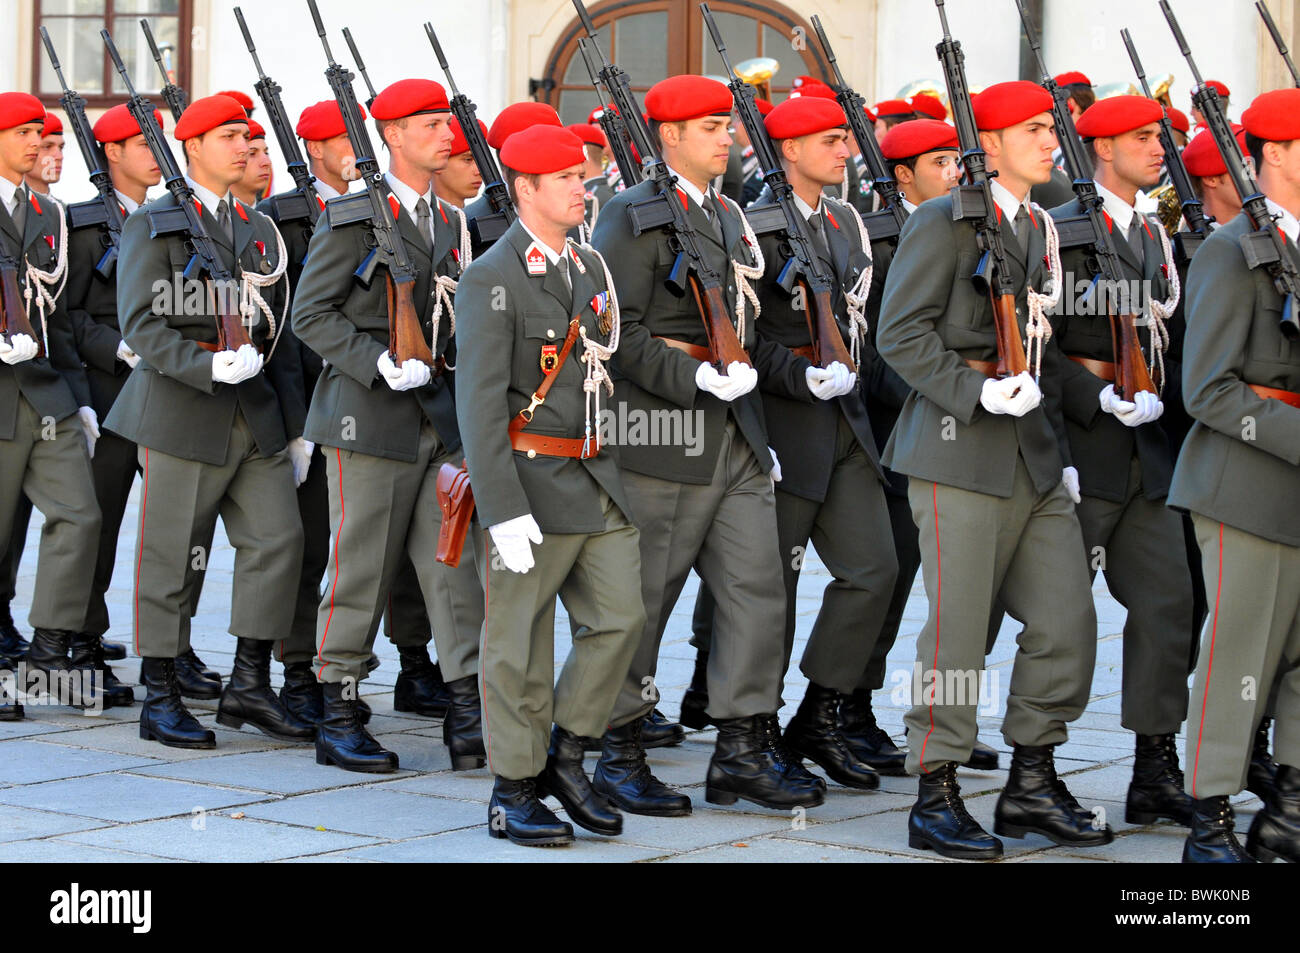 Défilé de soldats autrichiens, Autriche Banque D'Images